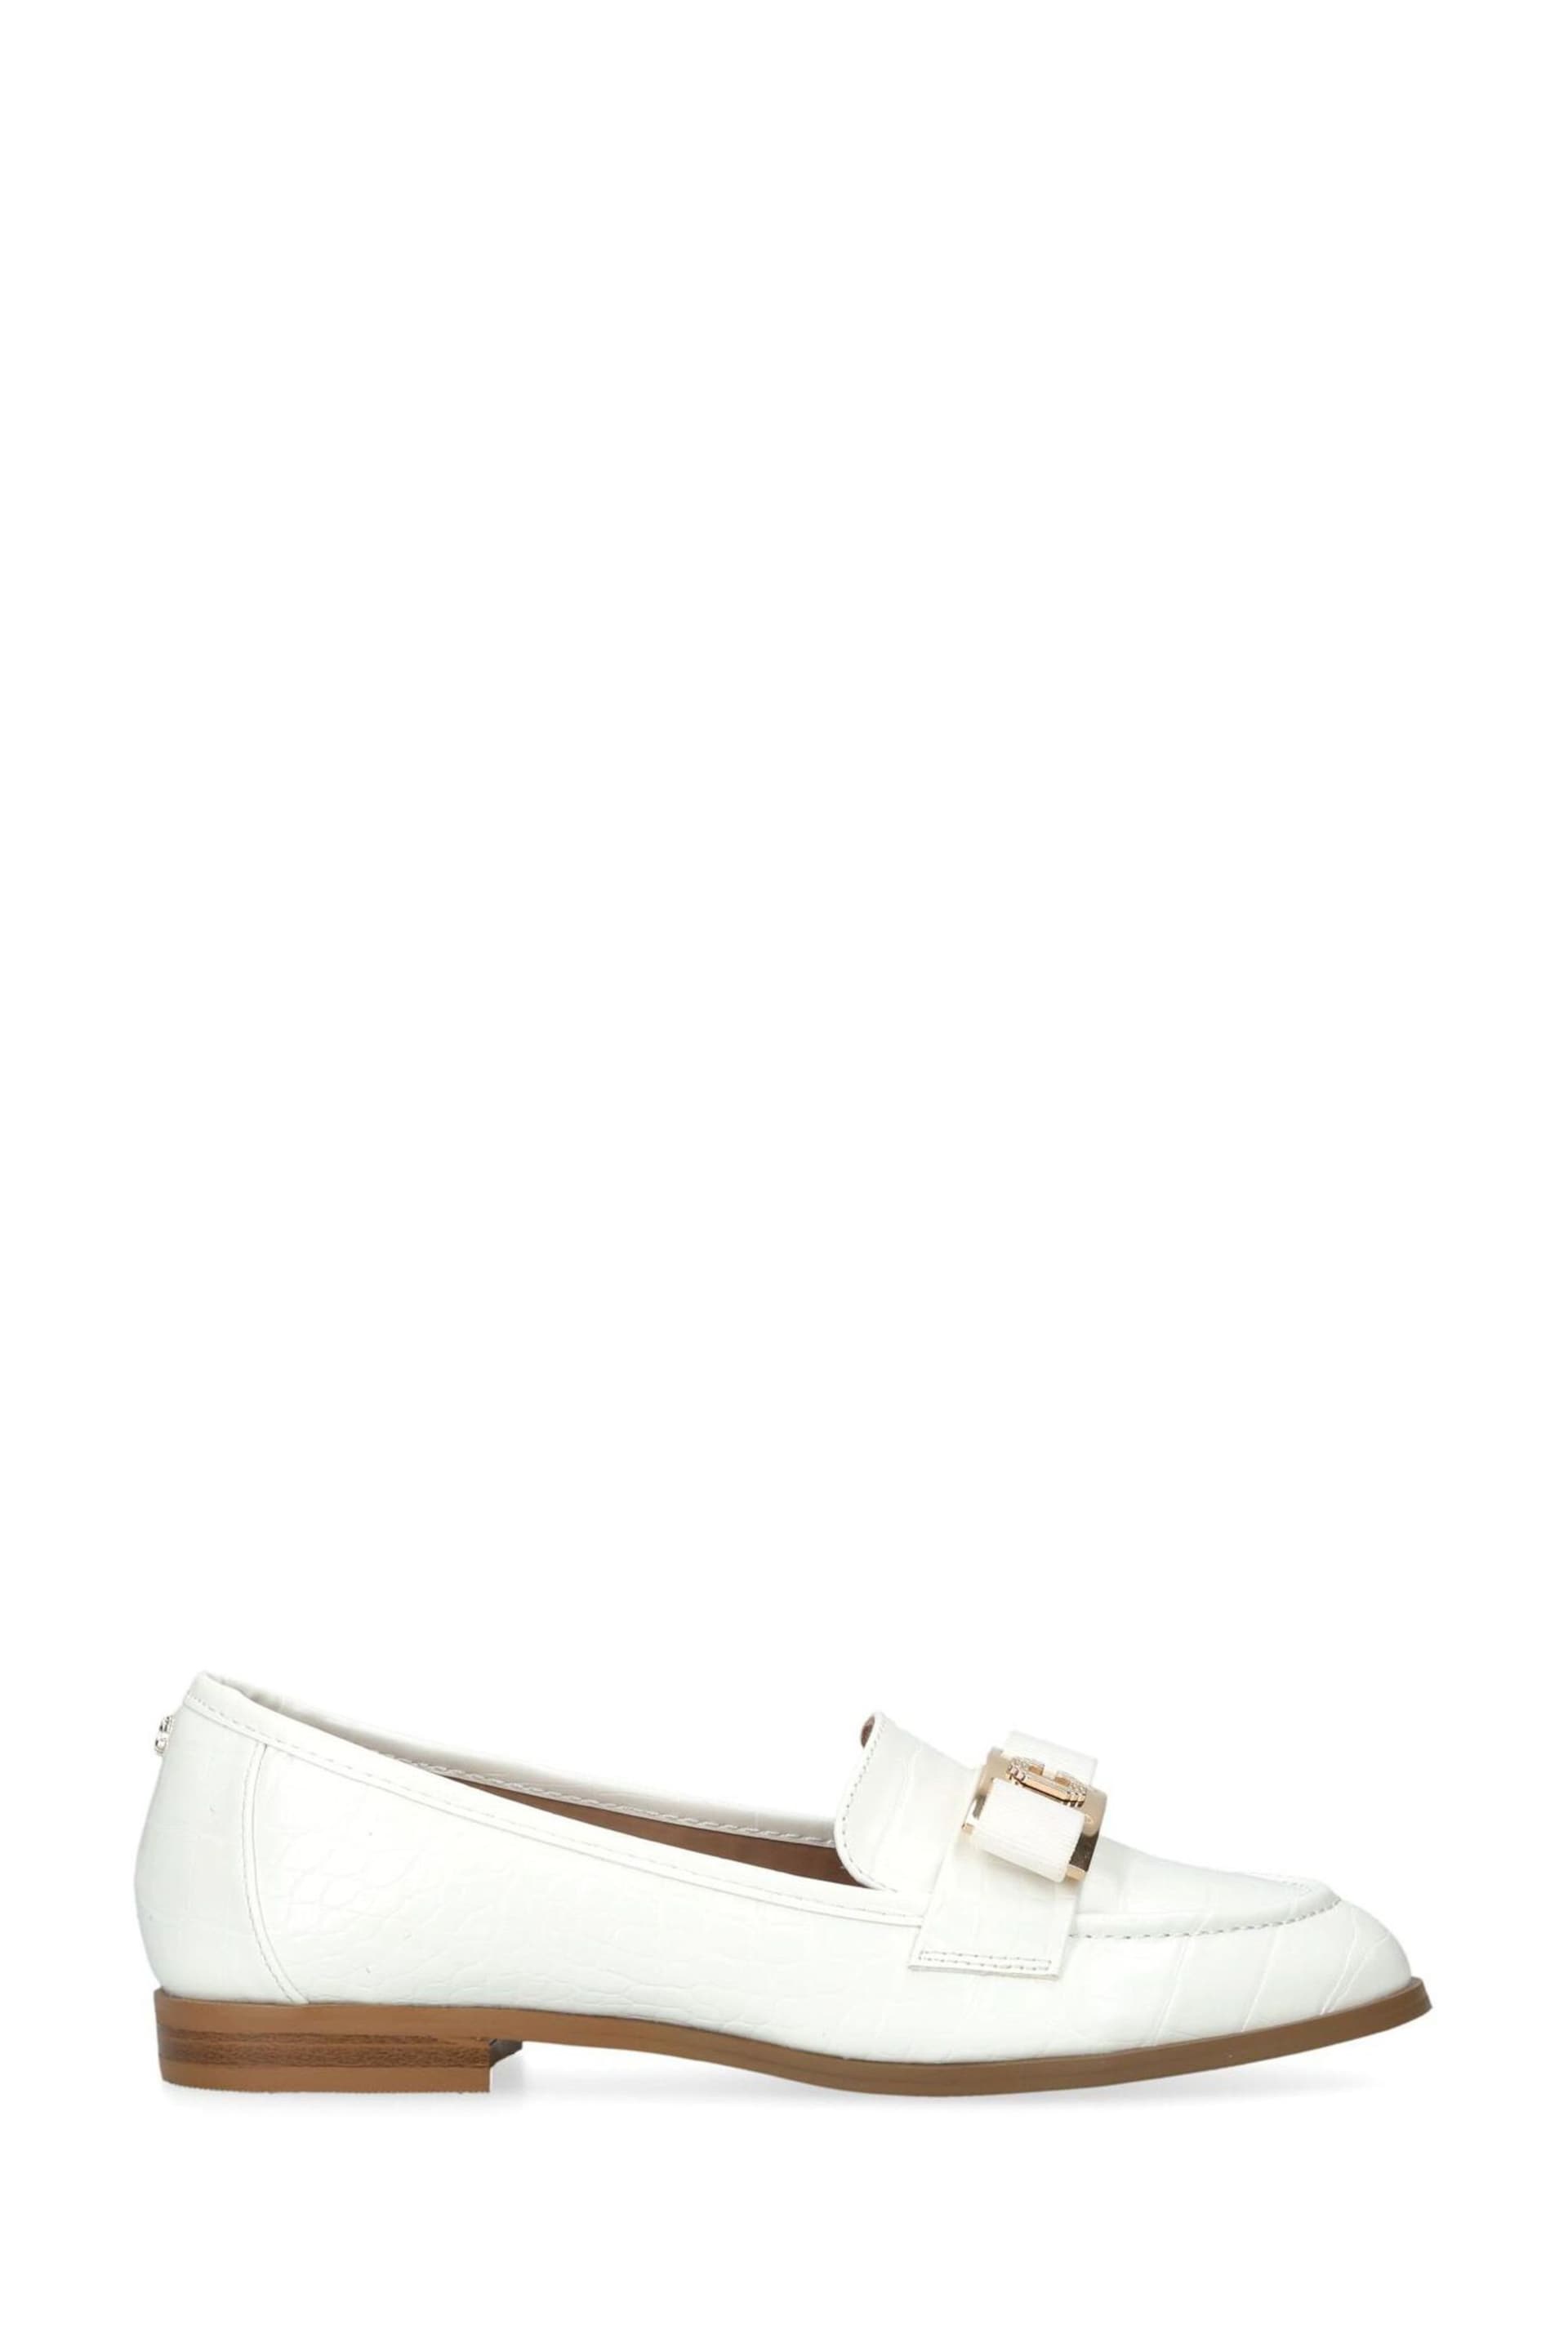 Carvela Majesty White Shoes - Image 1 of 5